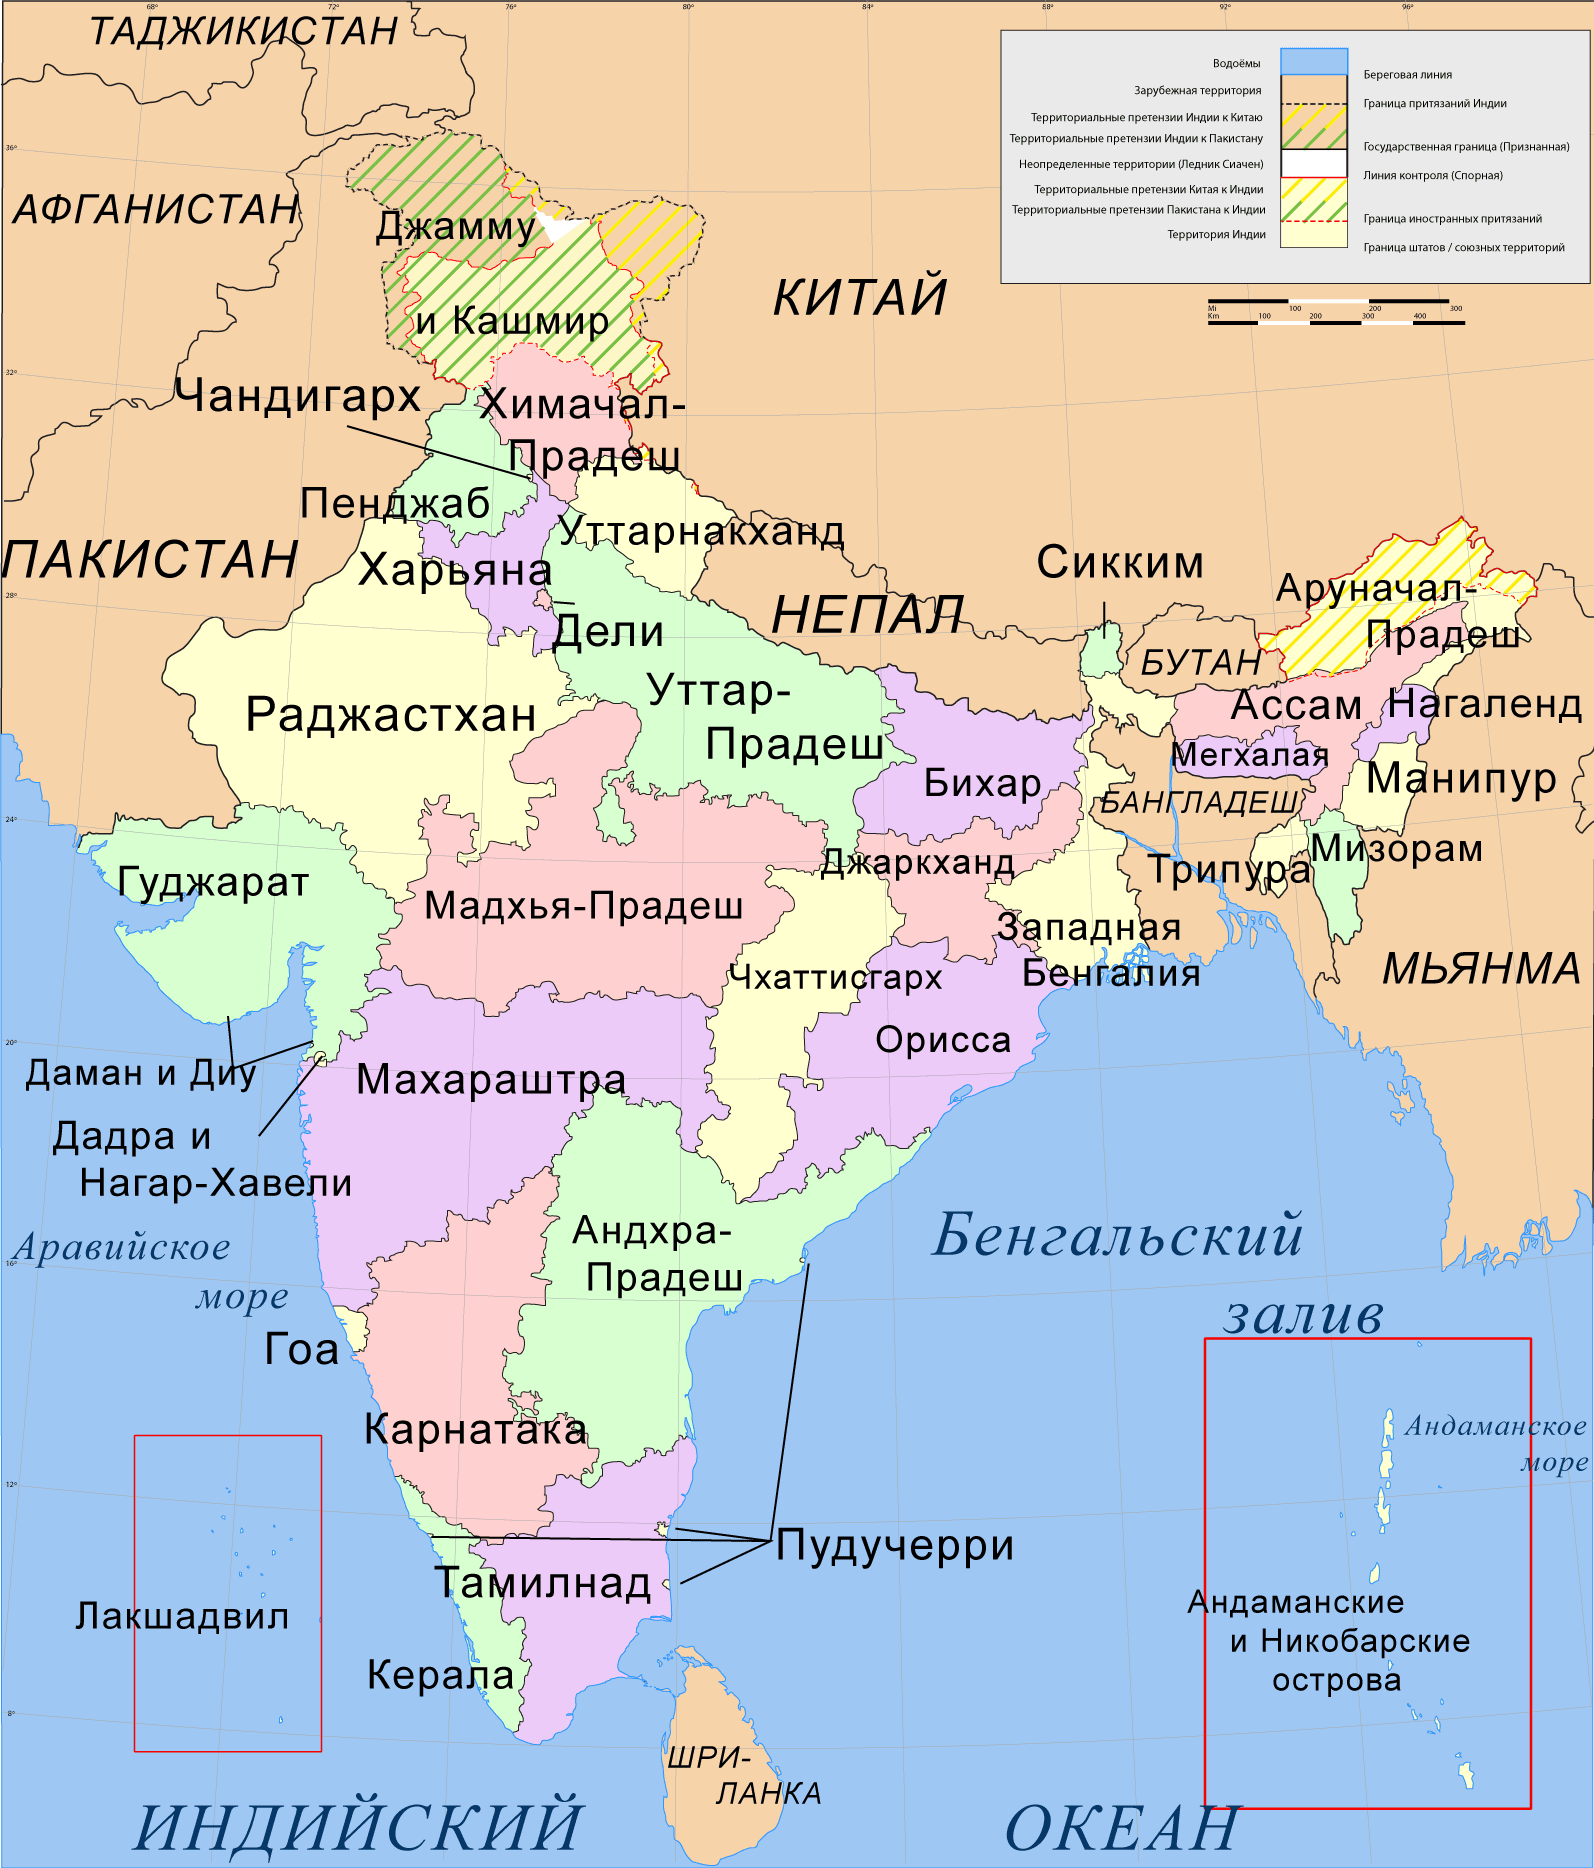 Topp 10 risproducerande stater i Indien